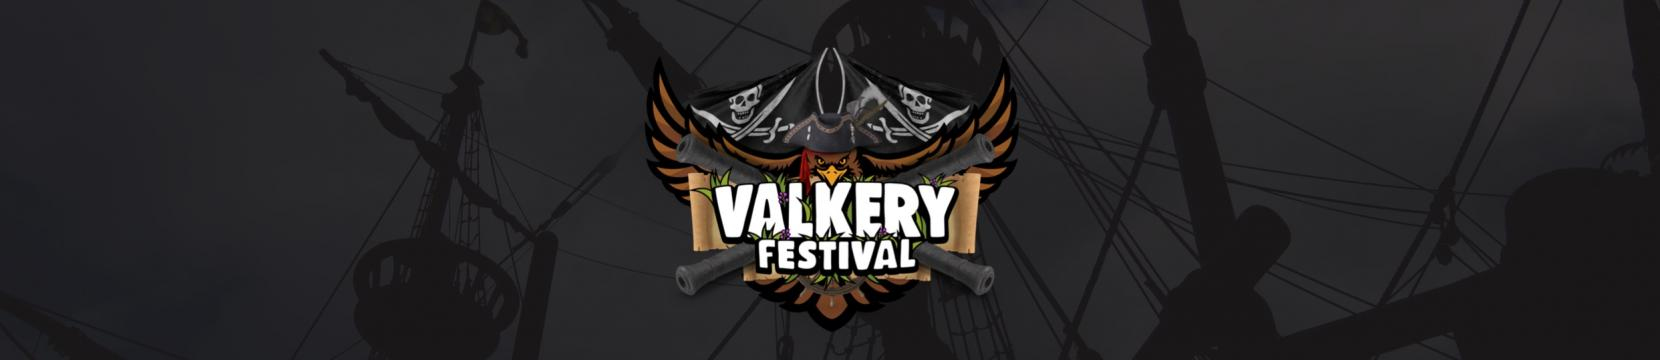 Valkery Festival